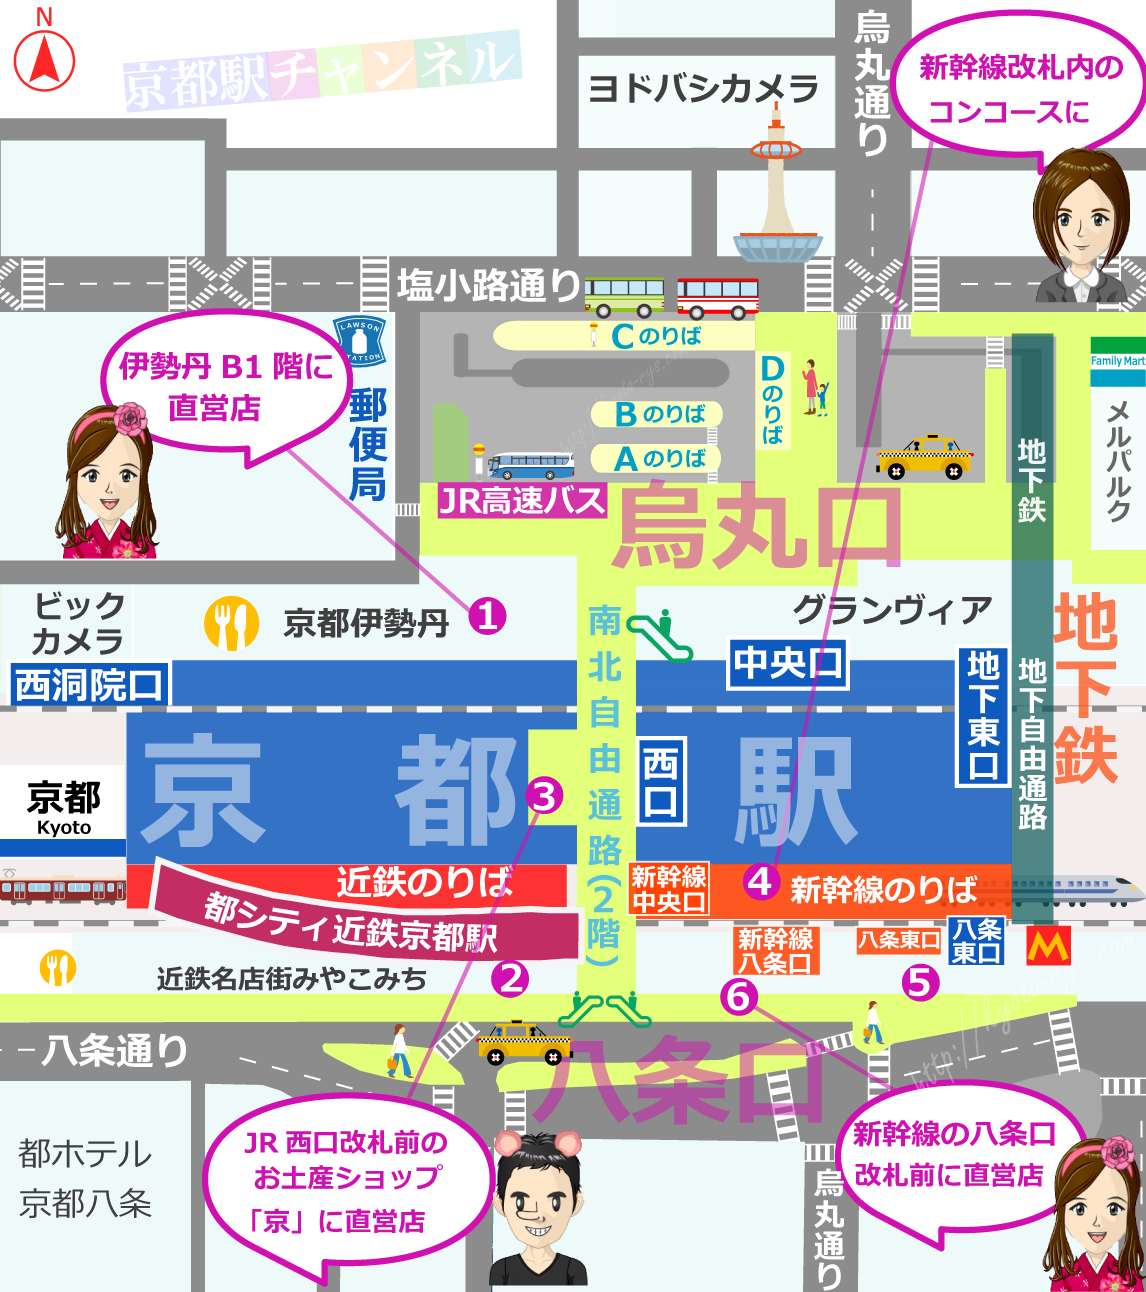 京都駅の鶴屋吉信の販売マップ